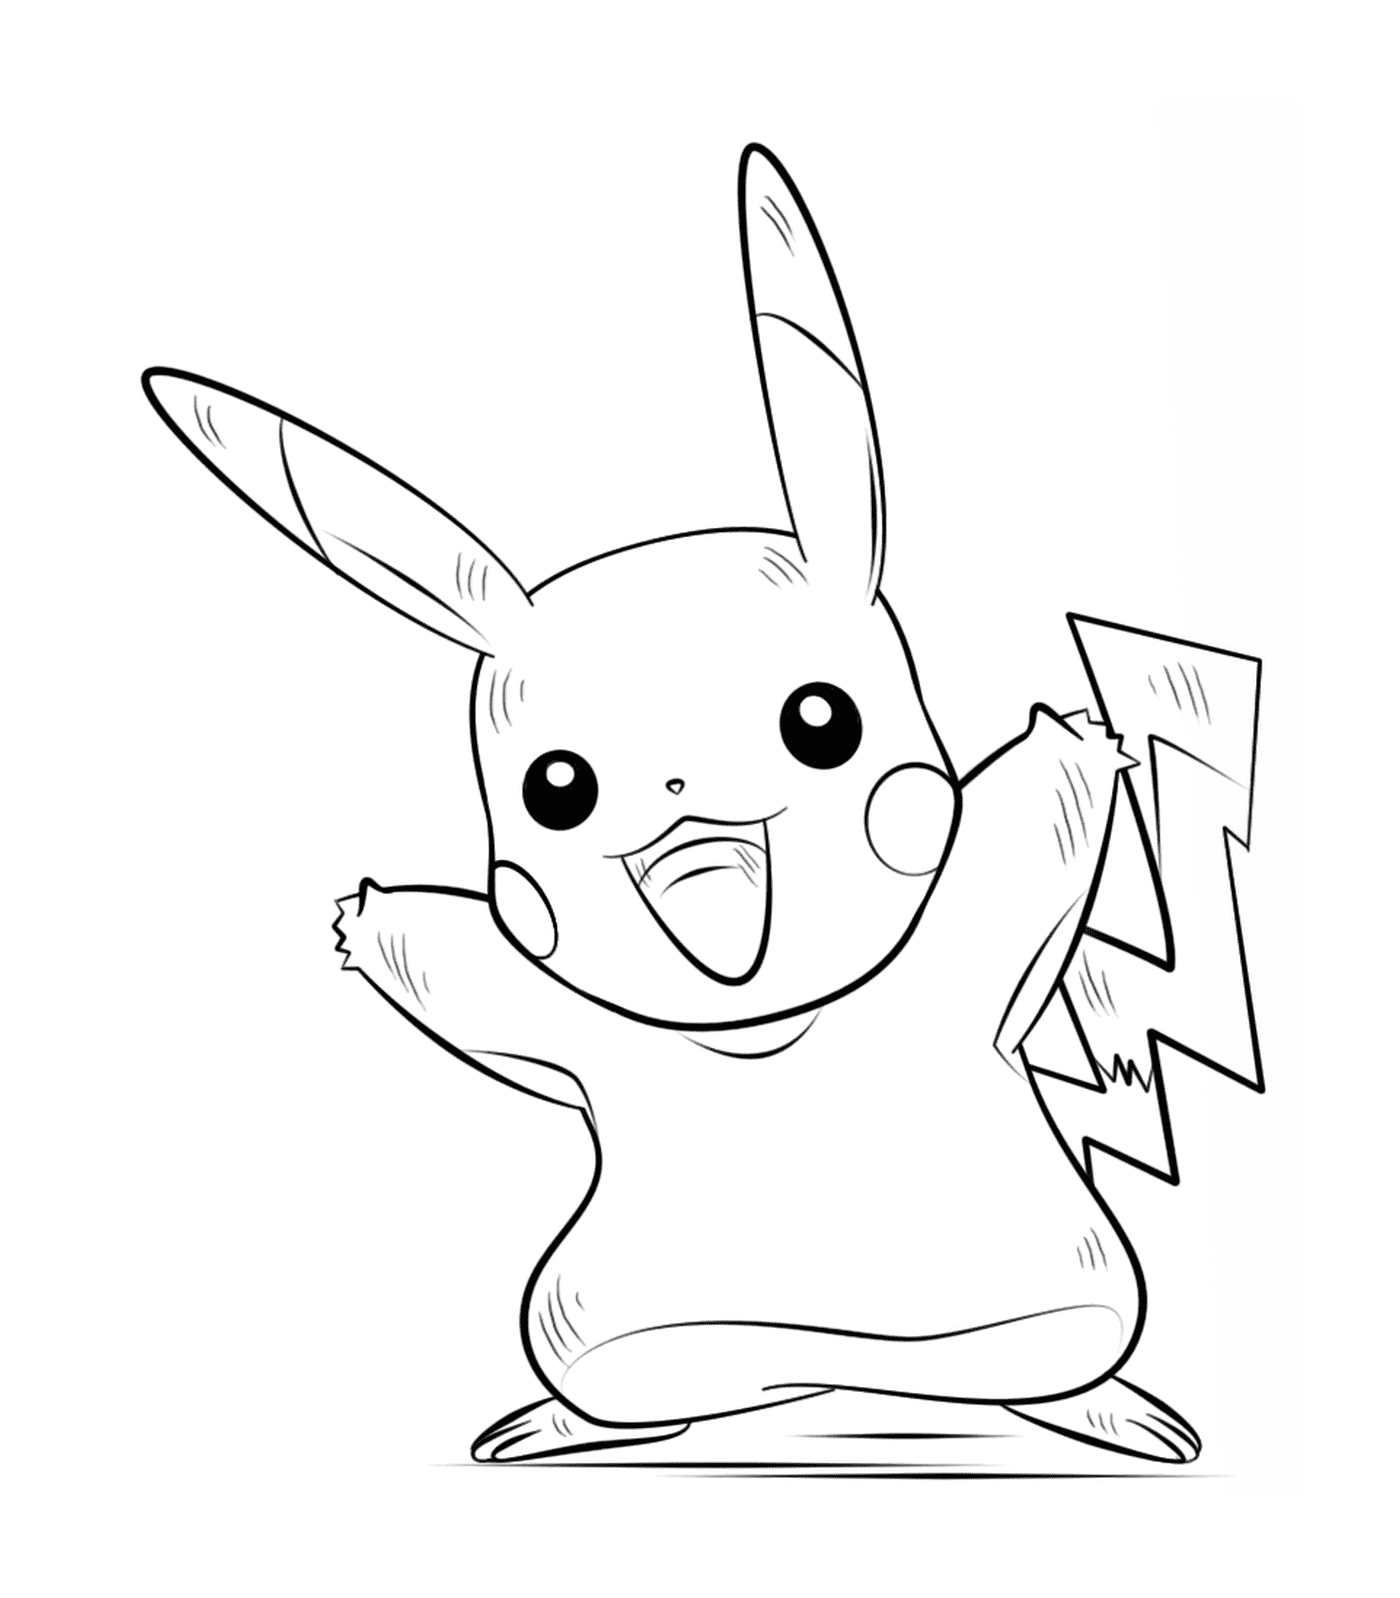 pikachu pokemon